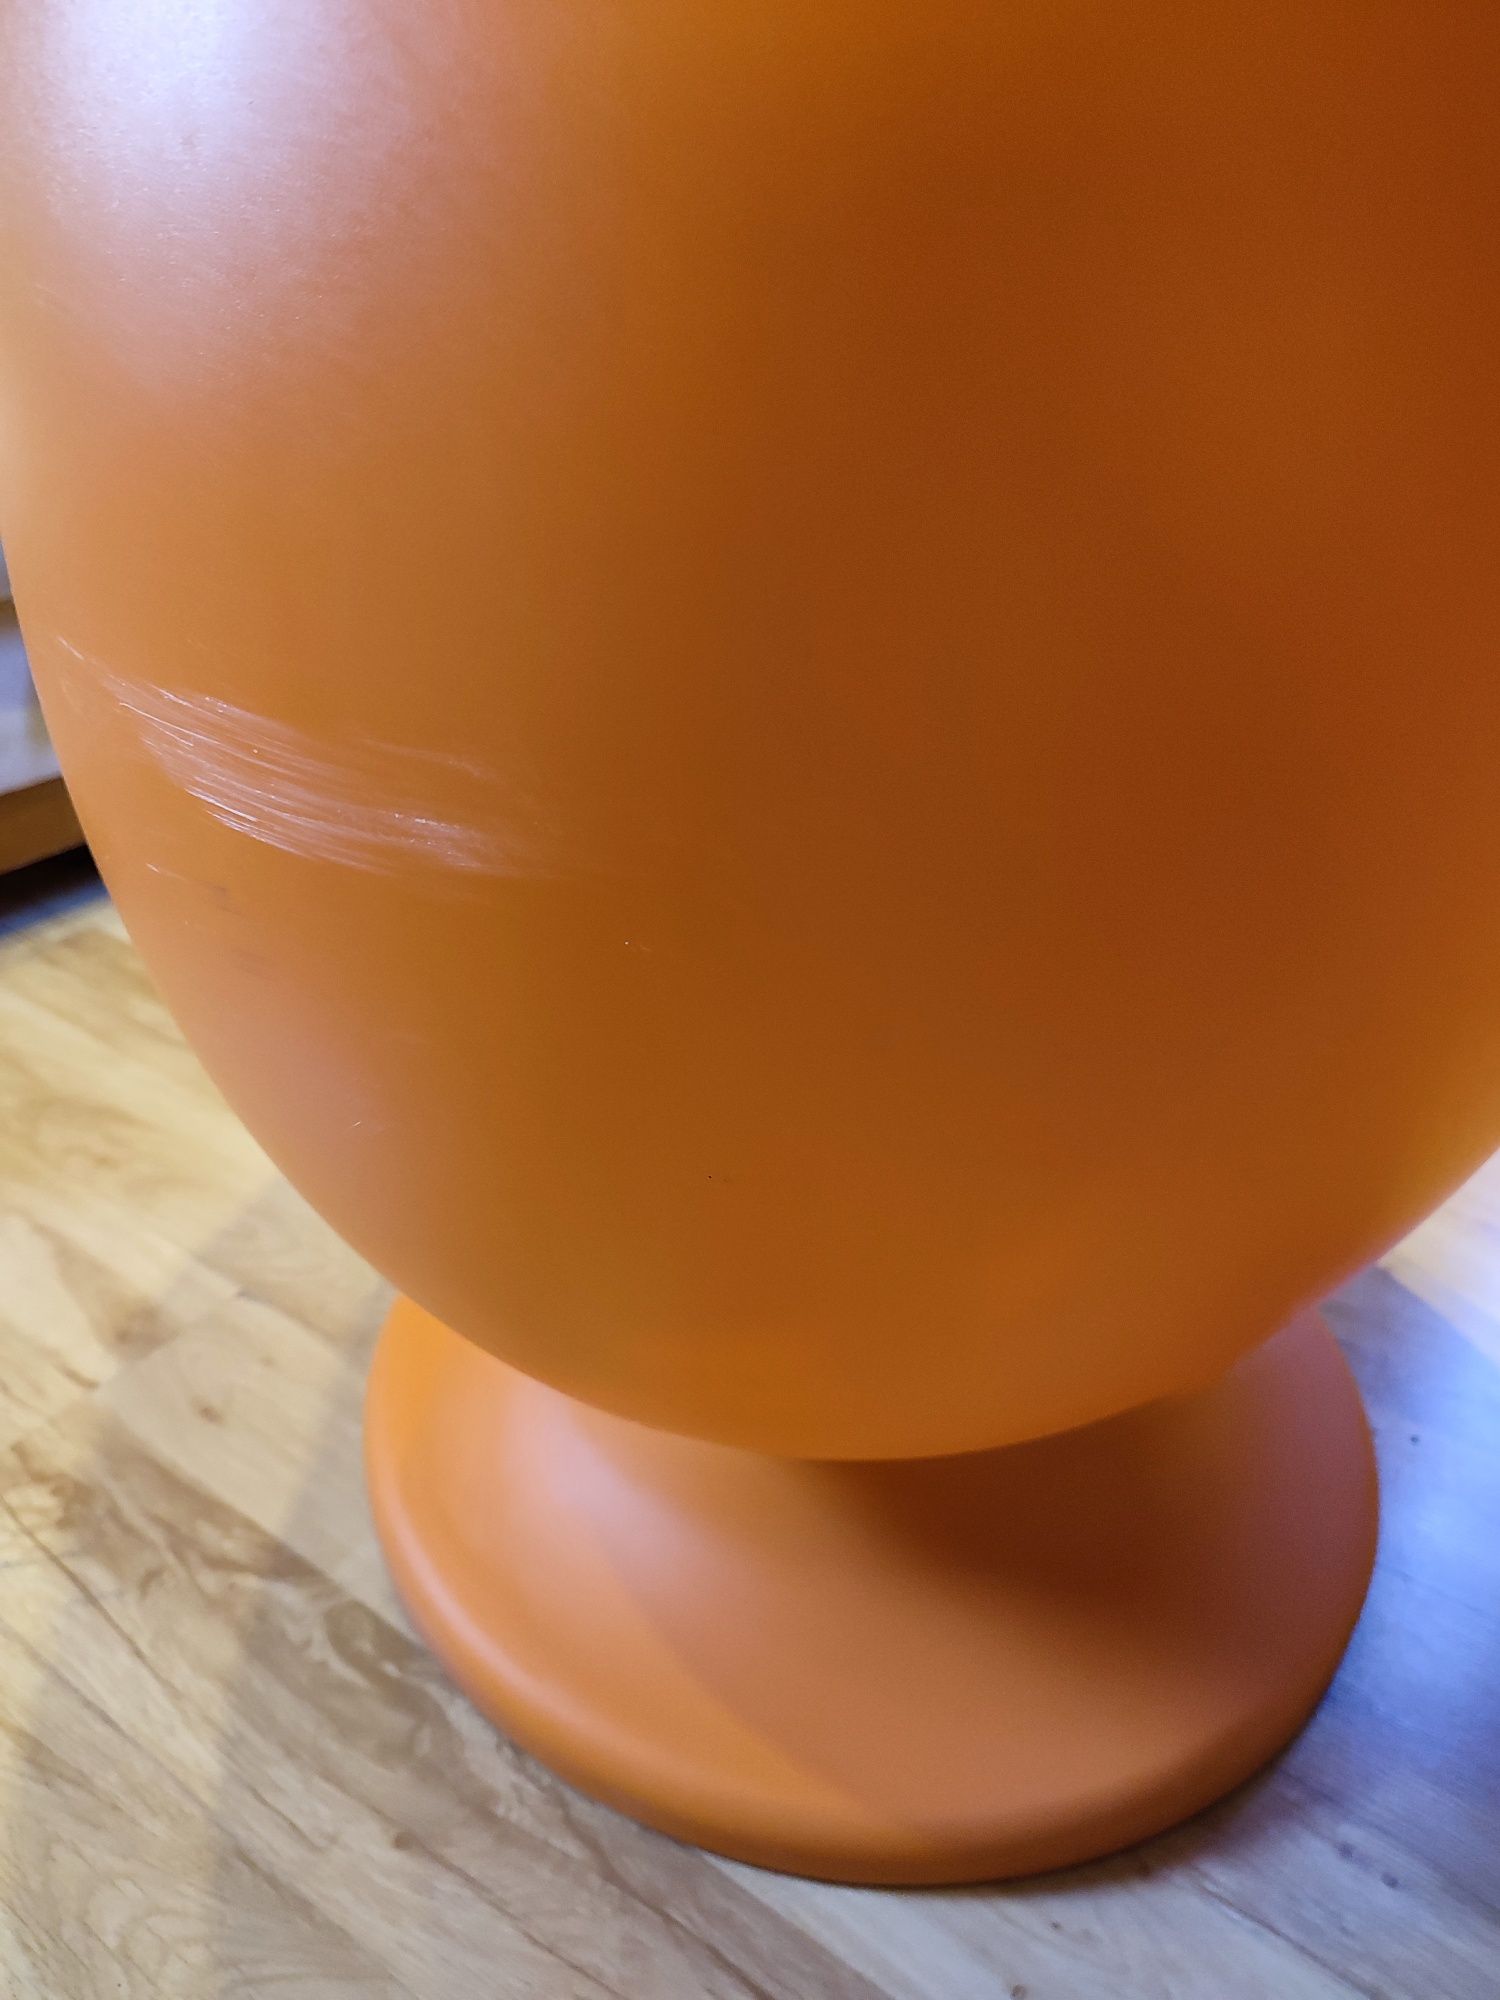 Fotel obrotowy jajko dla dzieci Ikea lomsk pomarańczowy